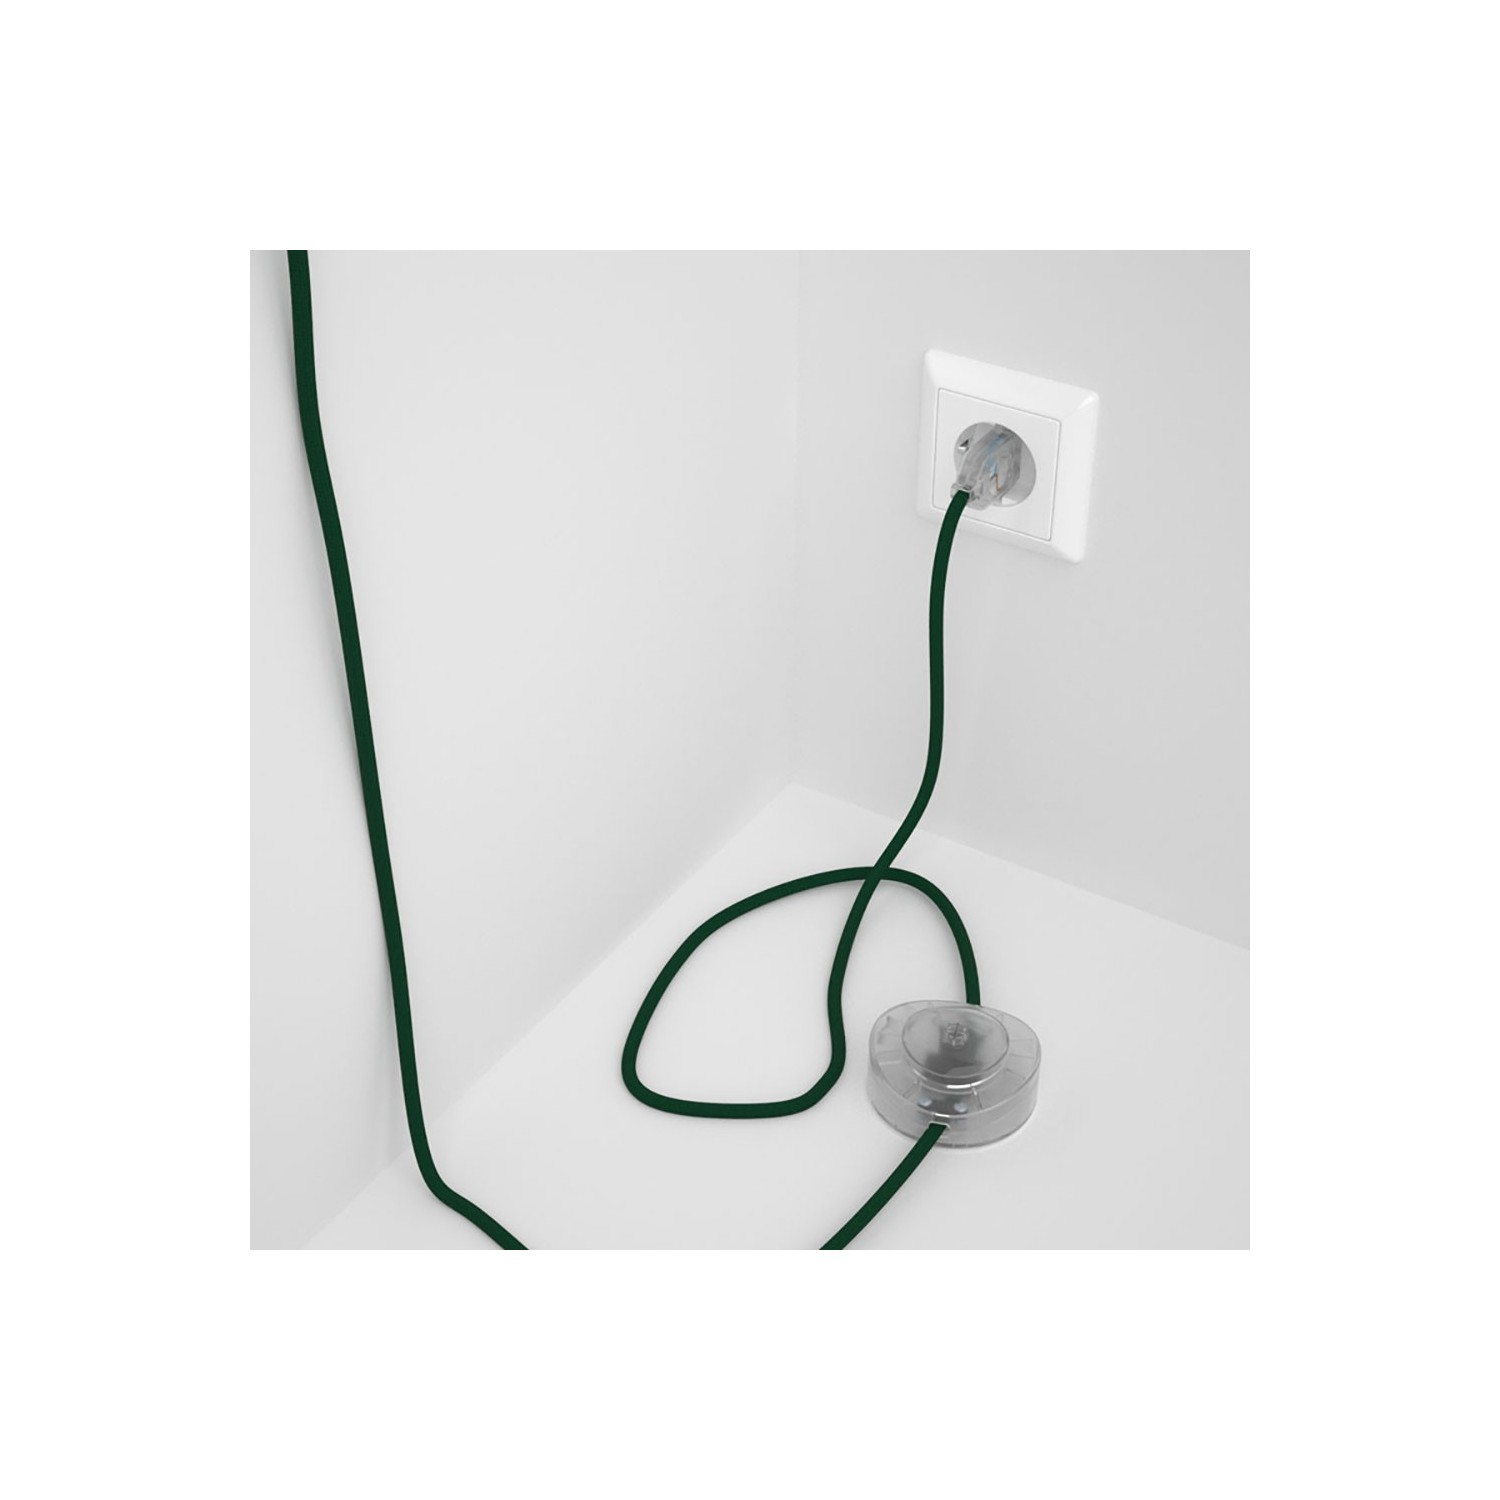 Sladdställ med fotströmbrytare, RM21 Mörkgrön Viskos 3 m. Välj färg på strömbrytare och kontakt